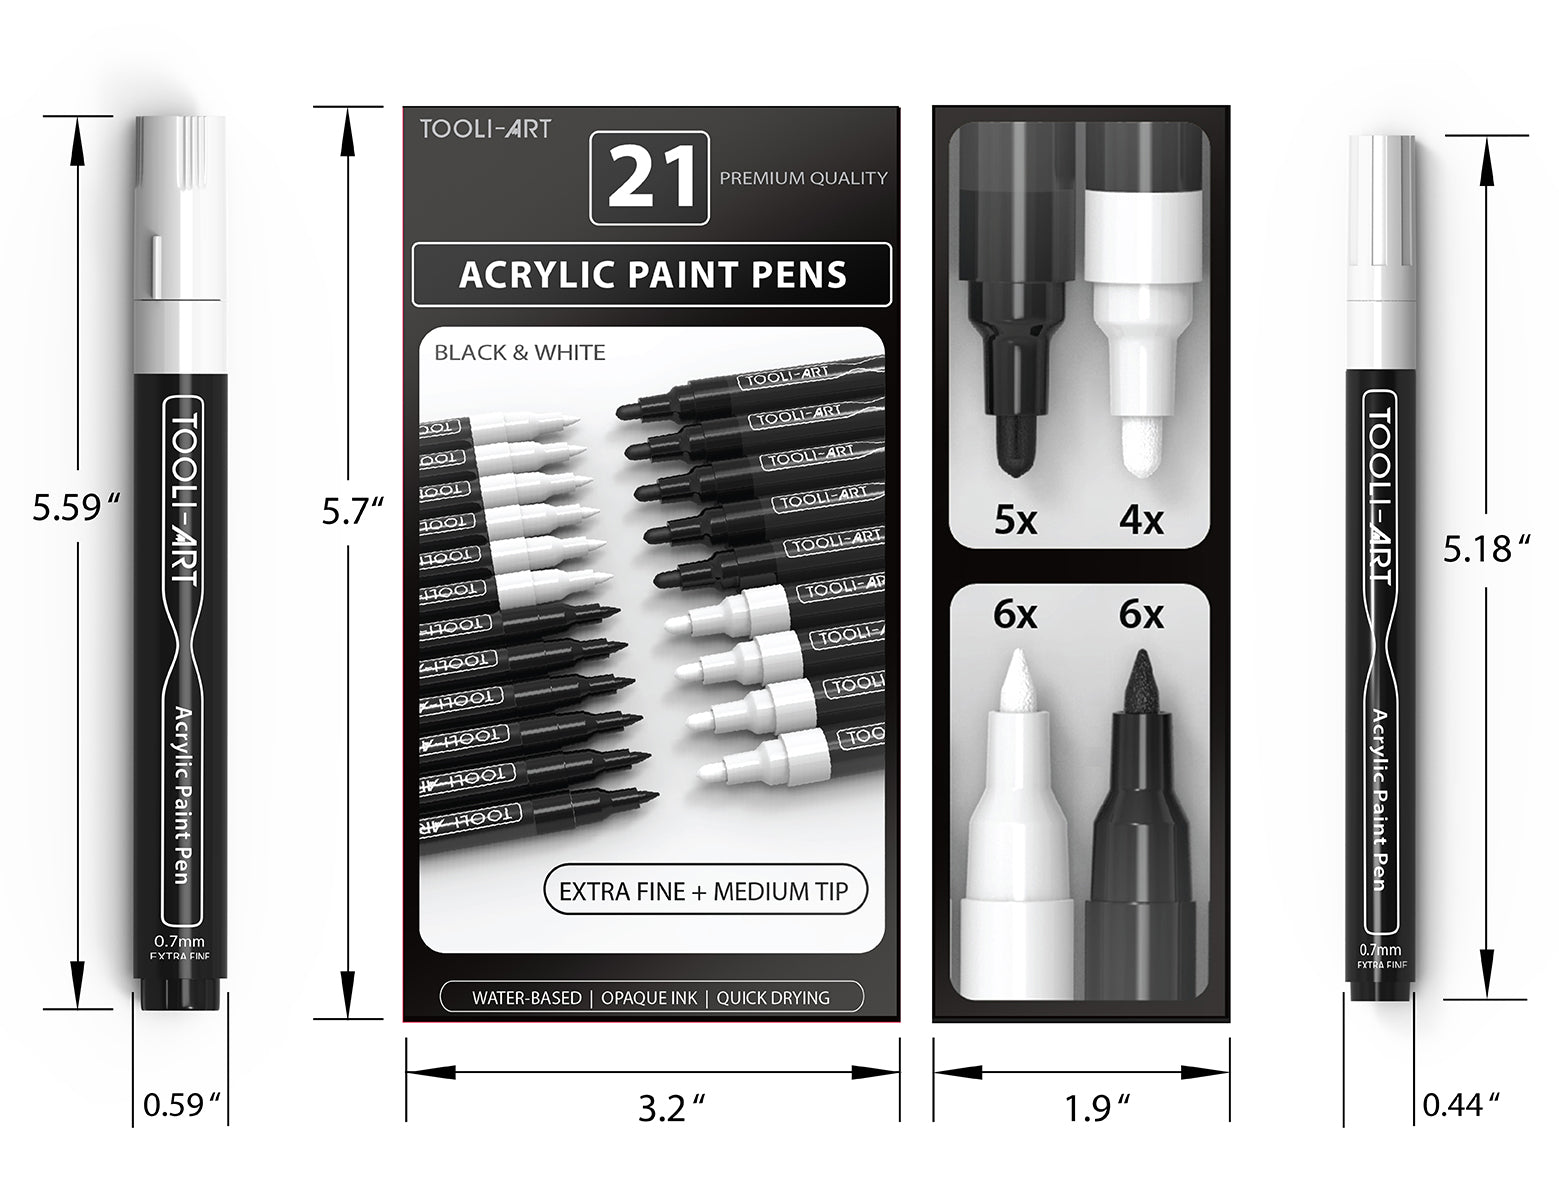 Posca Paint Pen - Black and White set – ART QUILT SUPPLIES - 2 Sew Textiles